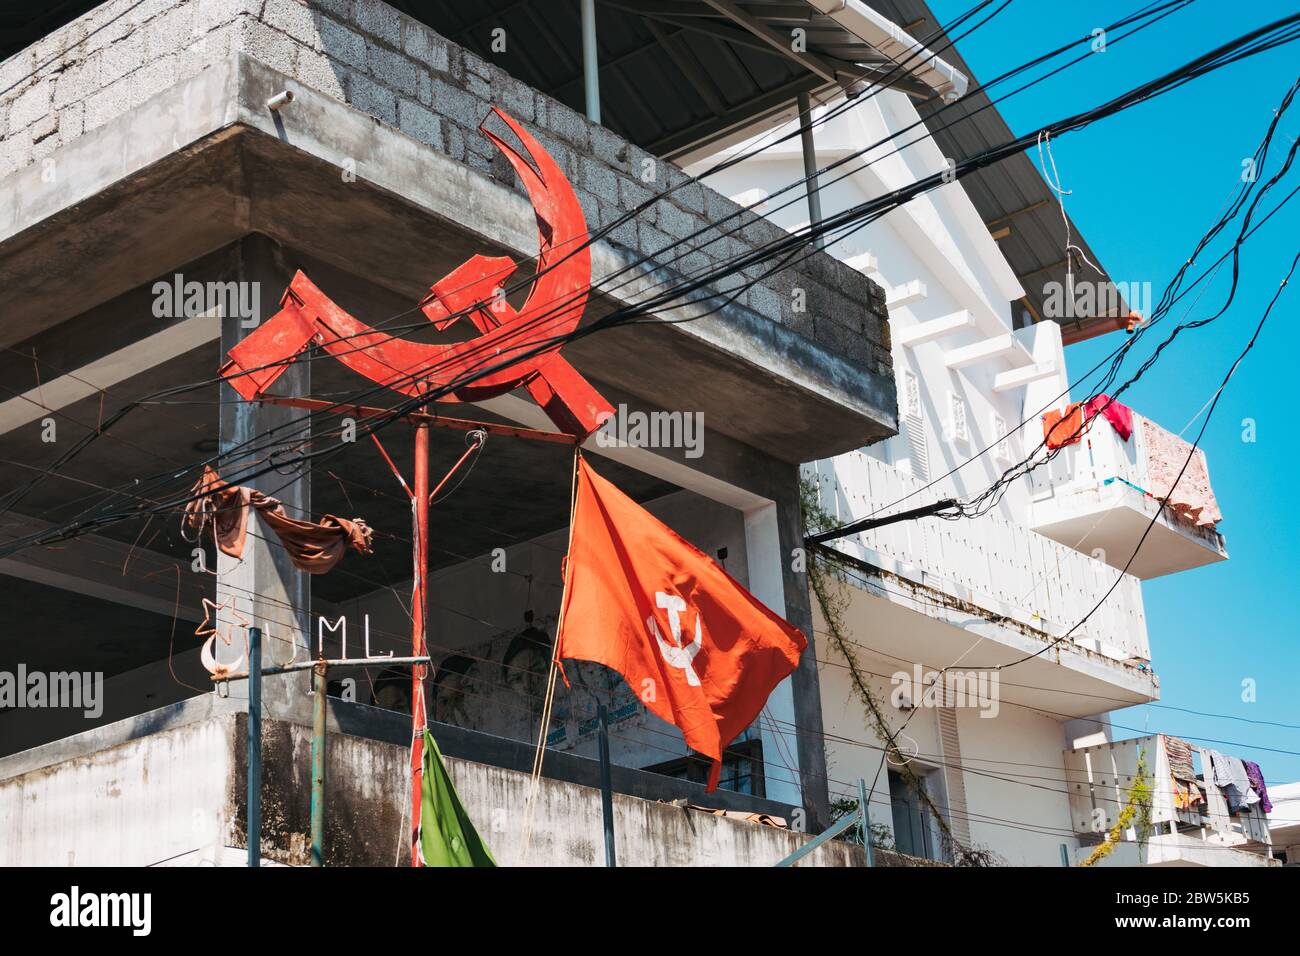 Ein kommunistischer Hammer und Sichel und eine marxistische Fahne der Kommunistischen Partei Indiens an einer Straßenecke in Fort Kochi, Kerala, Indien Stockfoto